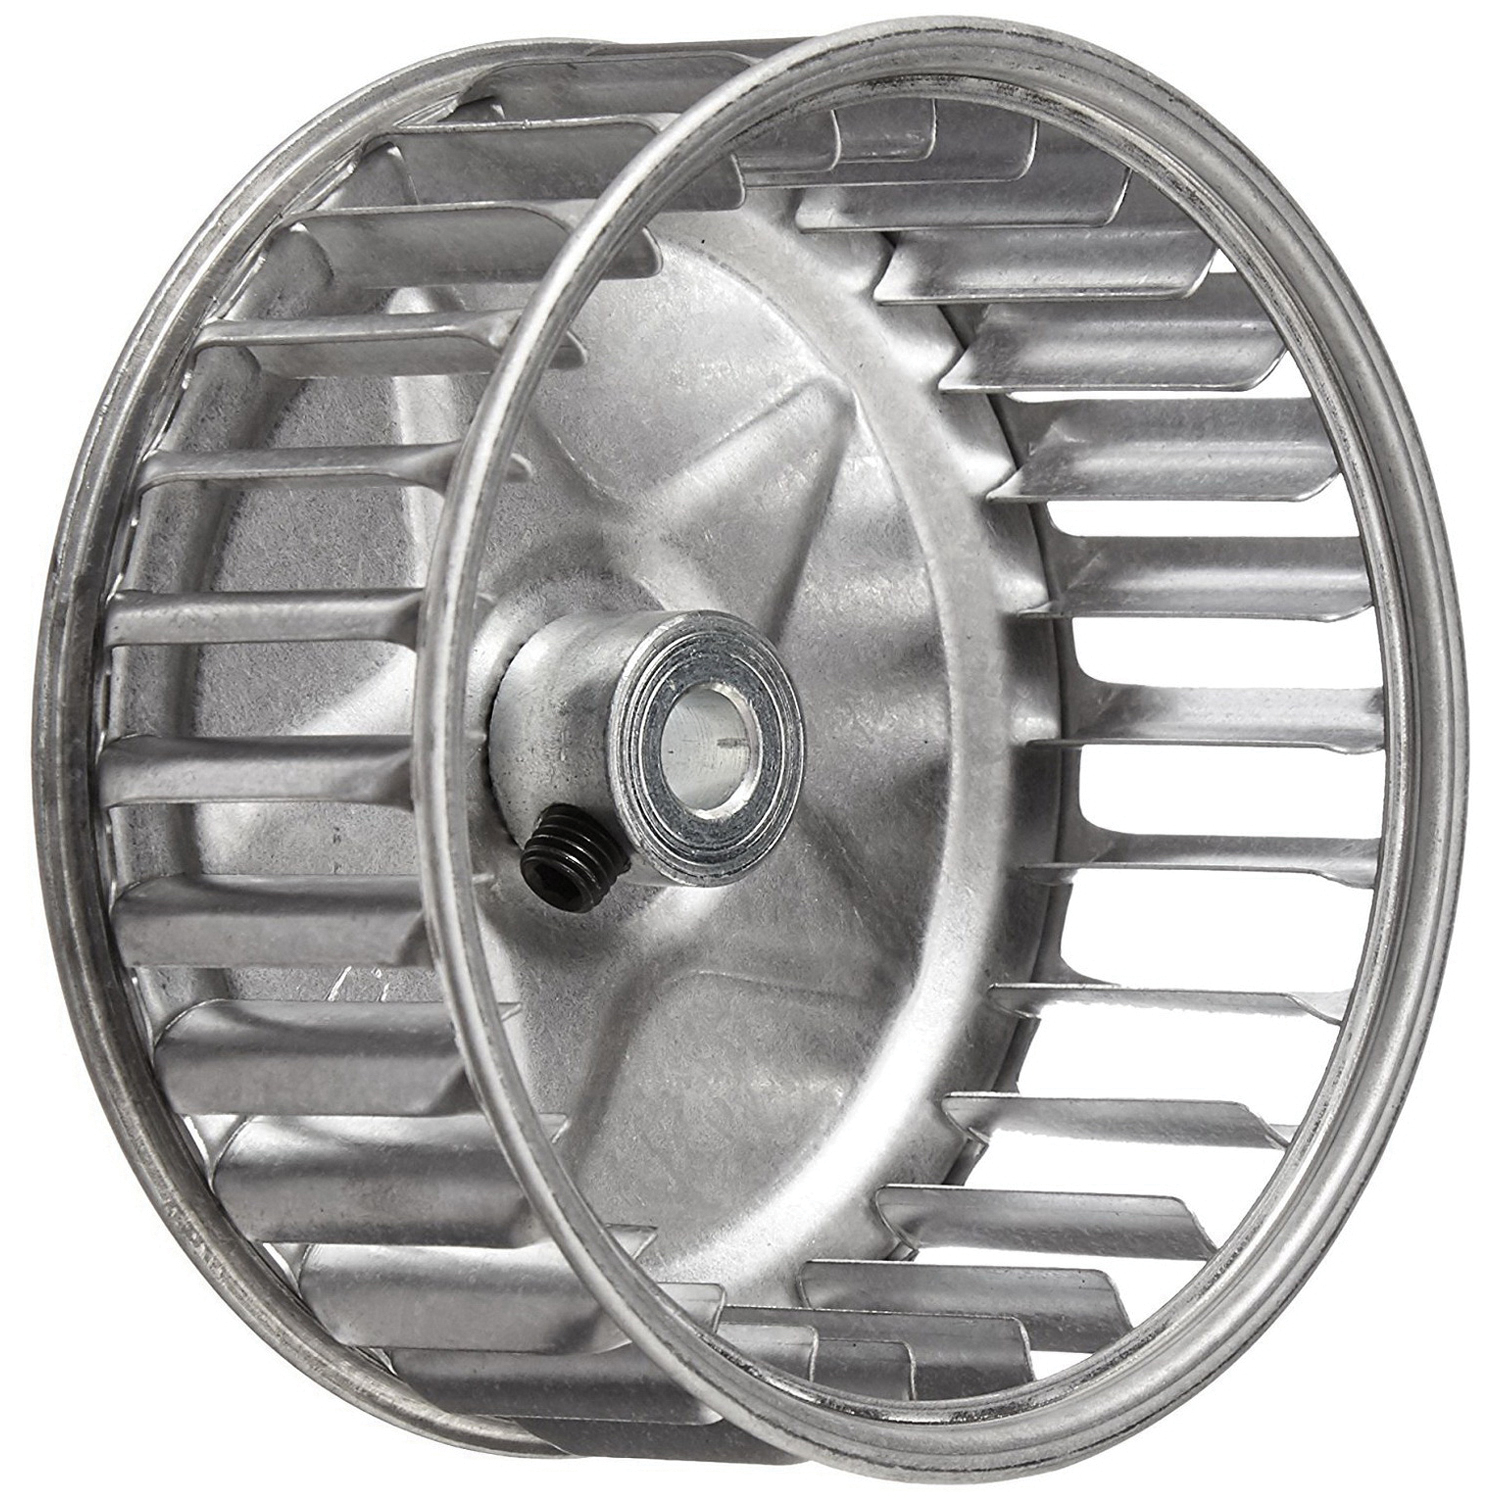 Tjernlund 950-1011 Blower Wheel Kit